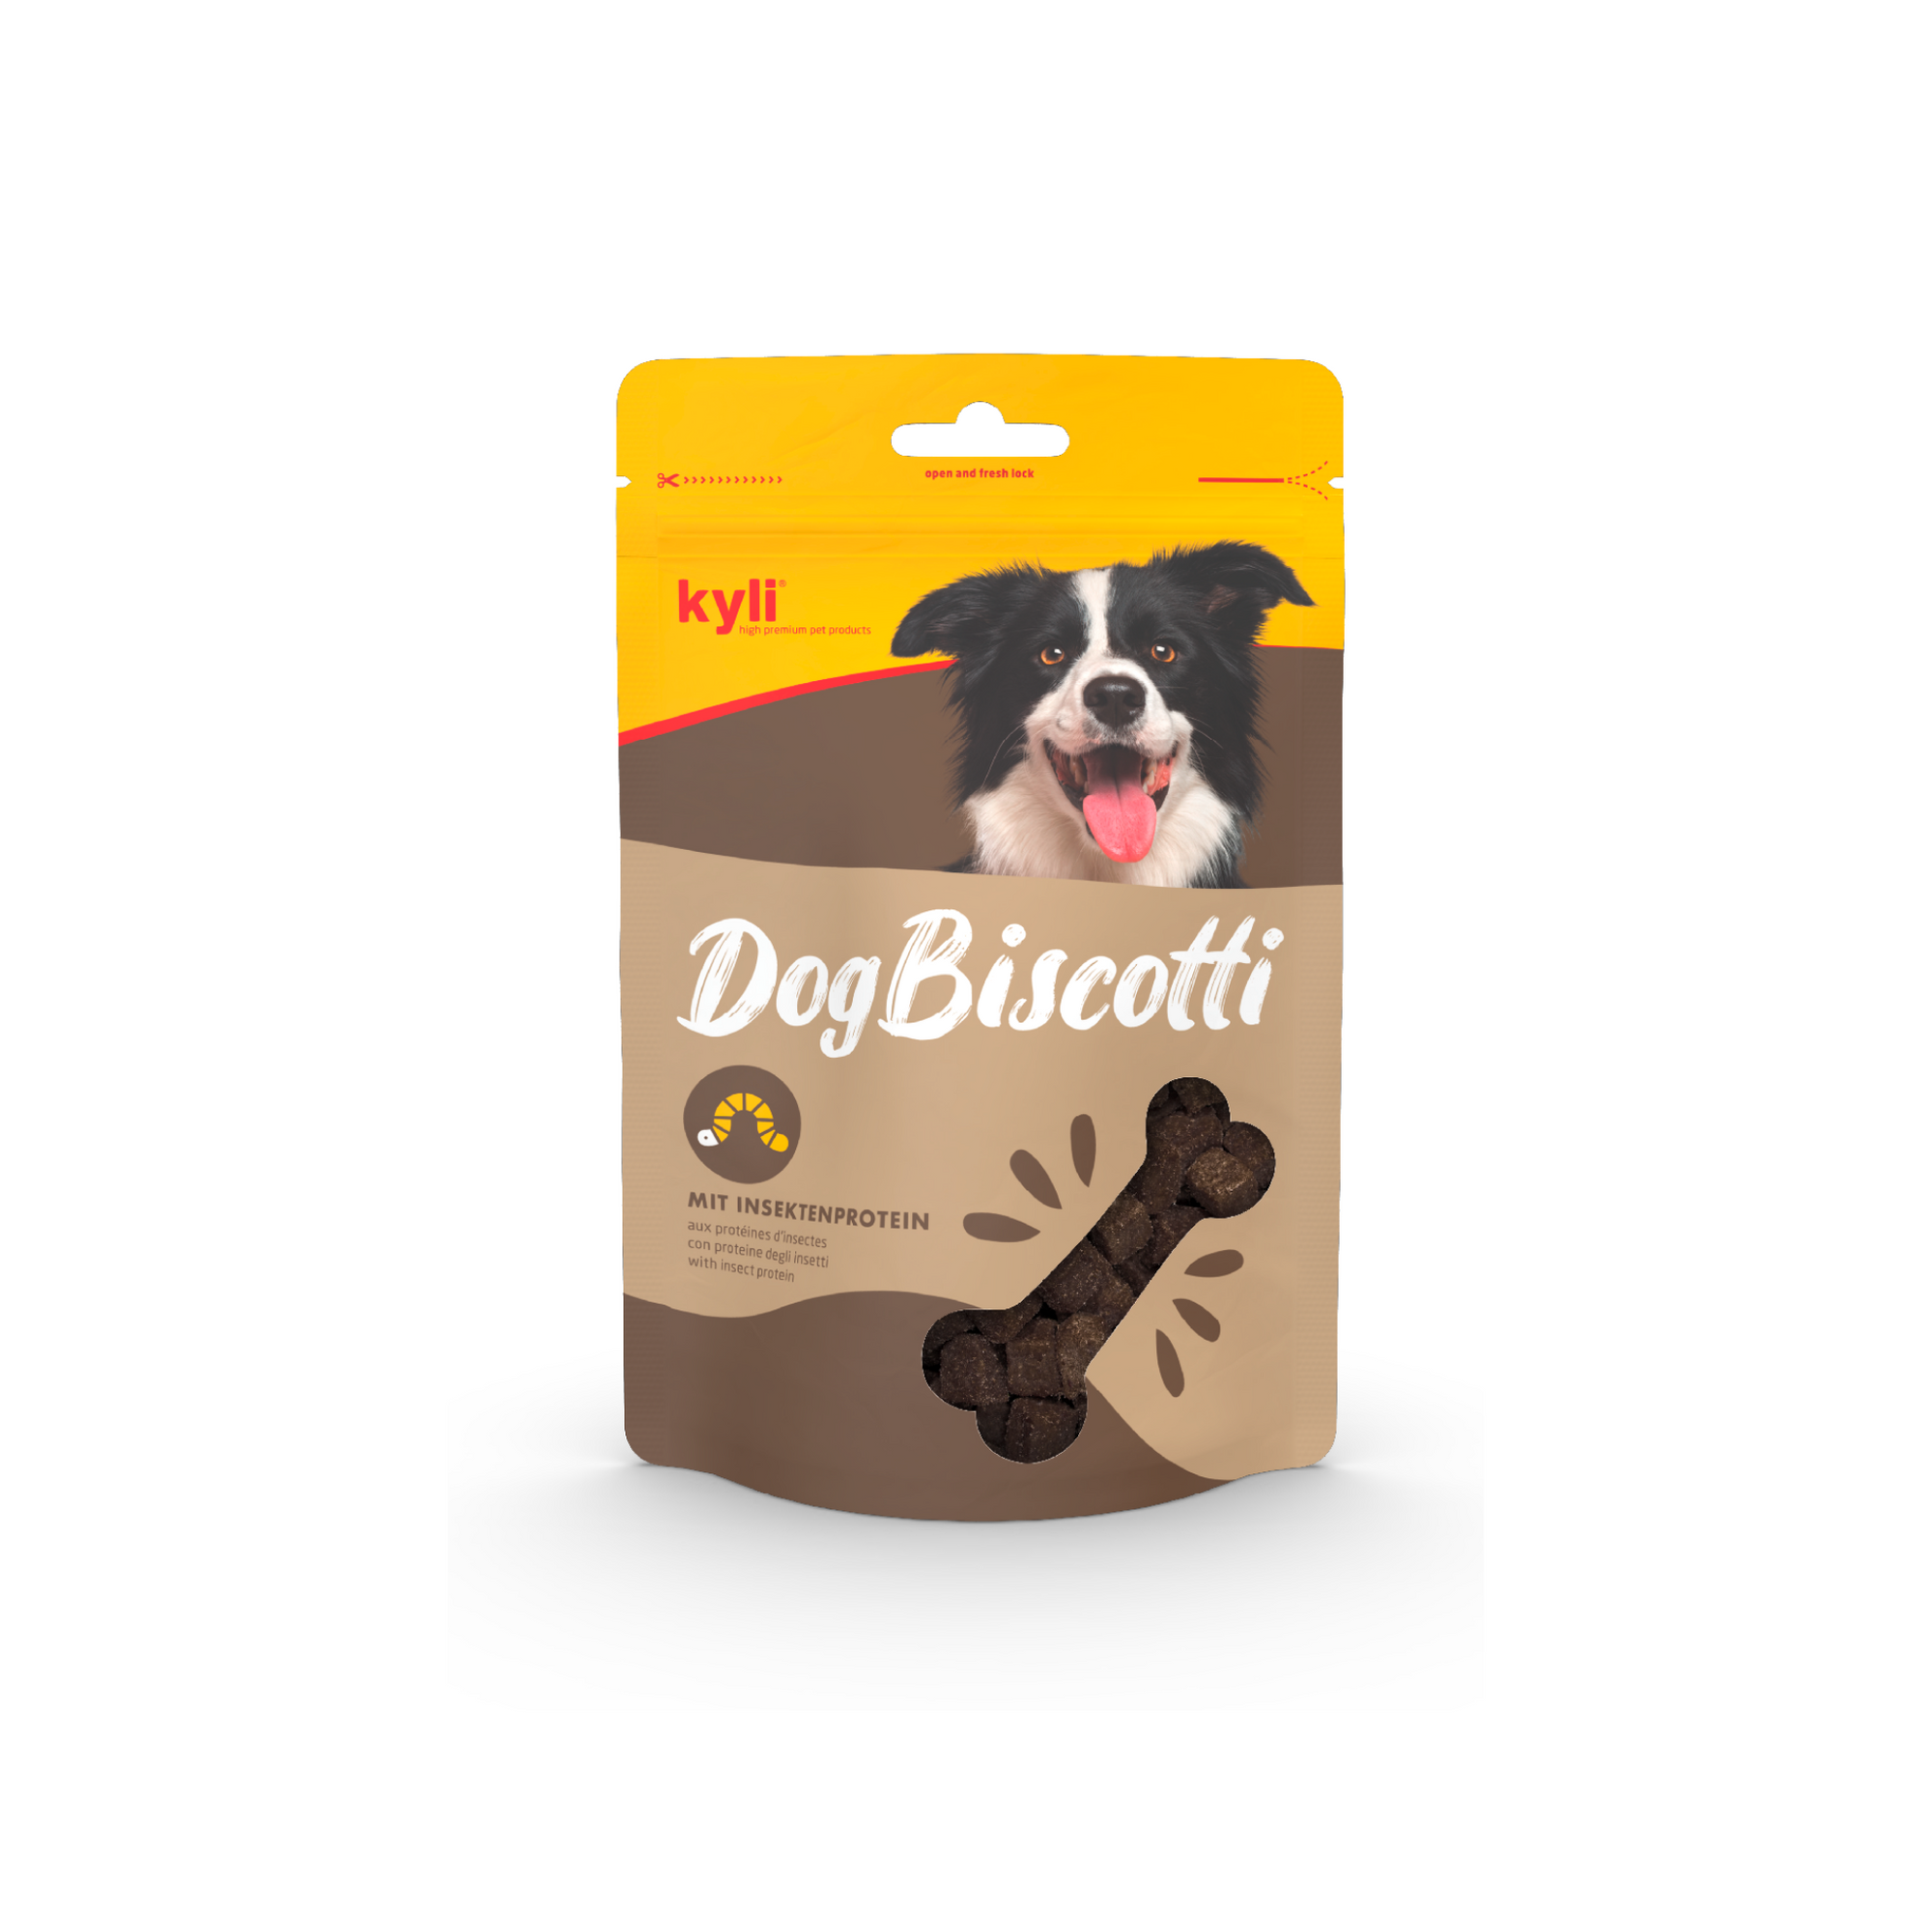 Artikel mit dem Namen kyli DogBiscotti mit Insektenprotein im Shop von zoo.de , dem Onlineshop für nachhaltiges Hundefutter und Katzenfutter.